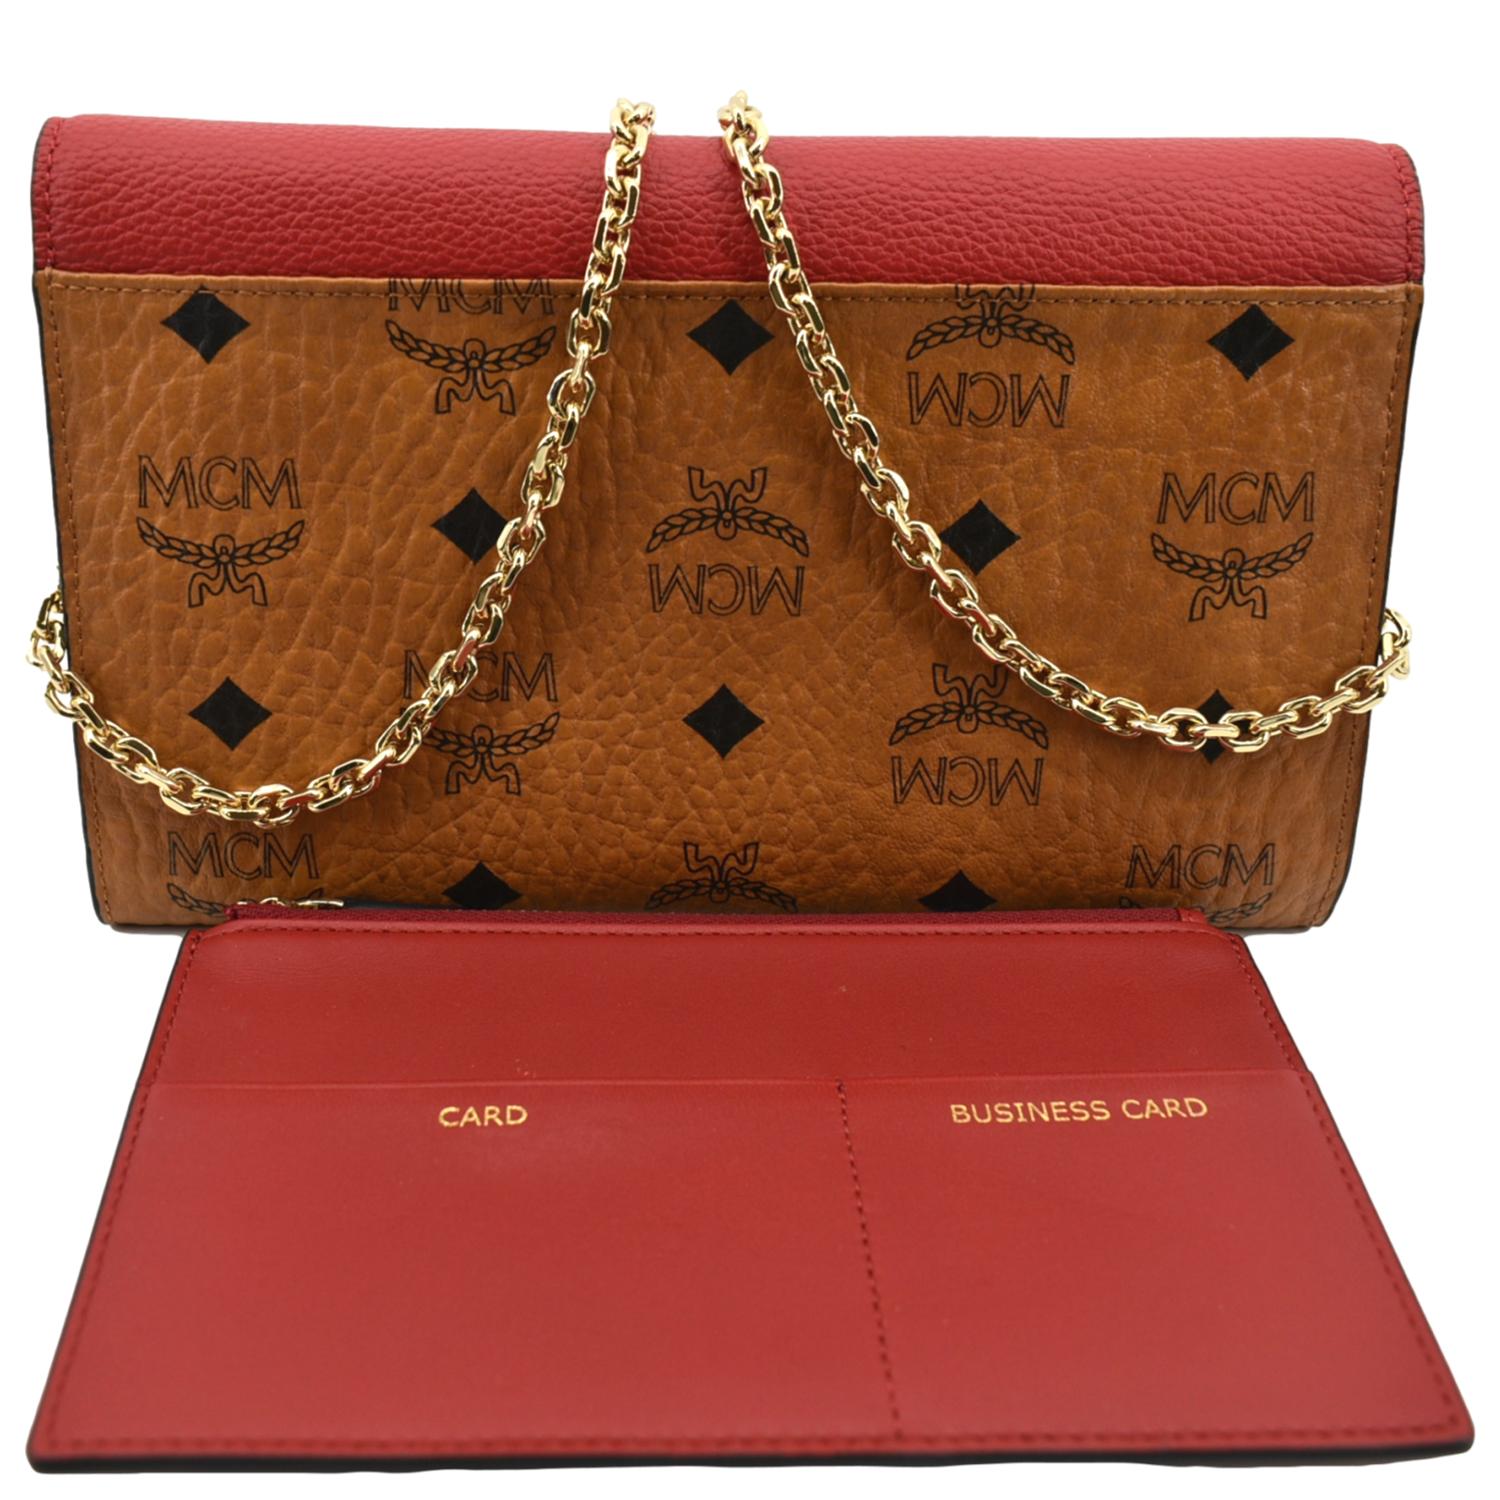 MCM Women's Wallets - Bags